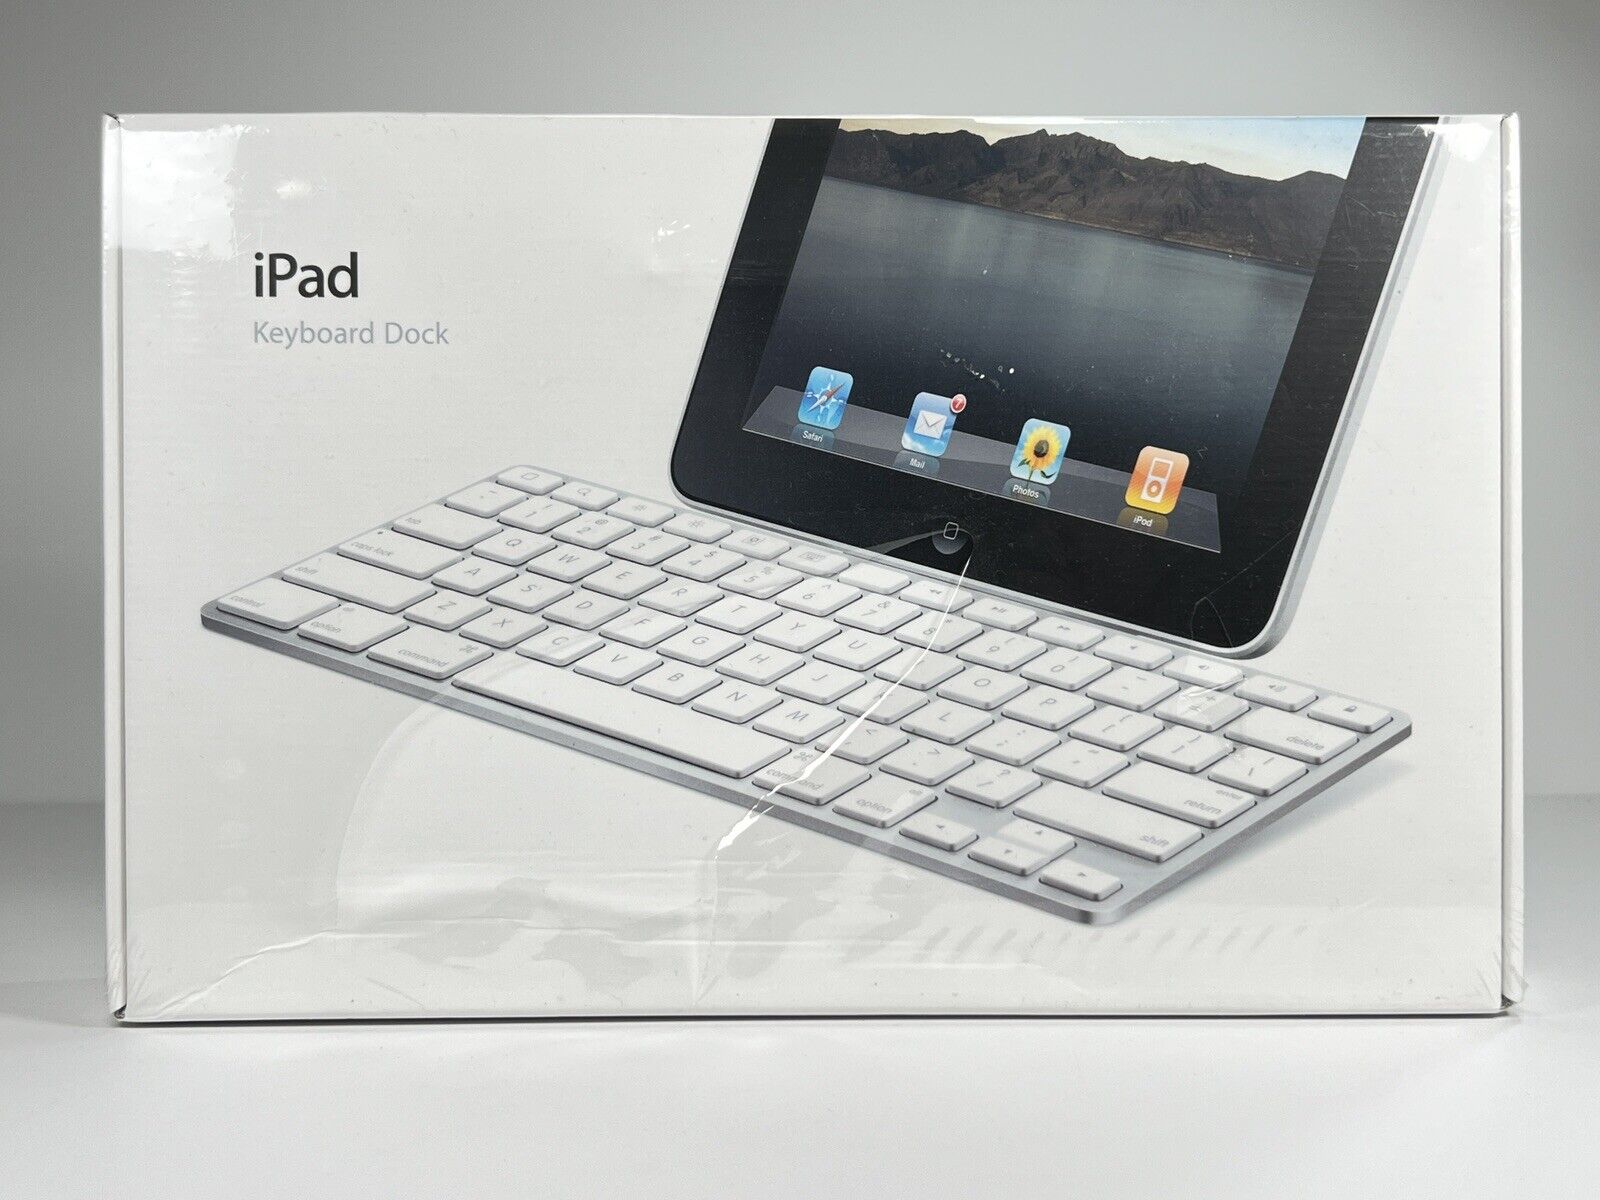 Apple iPad Keyboard Dock A1359 MC533LL/A Wired USB, Gen 1, 2, 3 Brand New